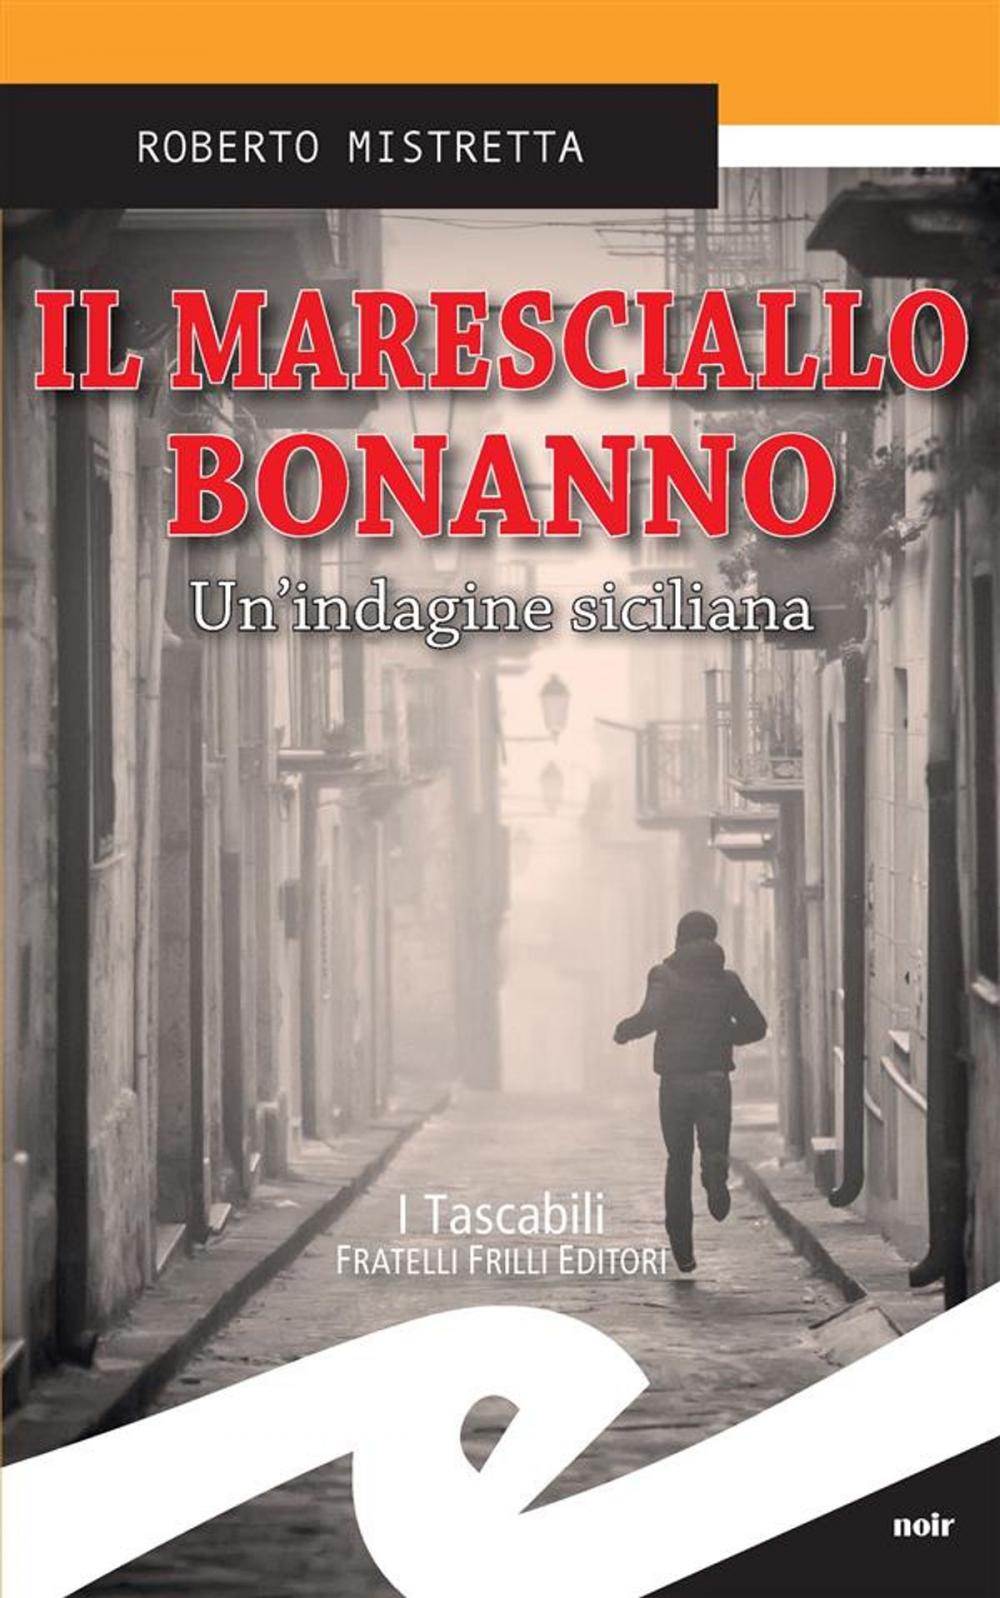 Big bigCover of Il maresciallo Bonanno